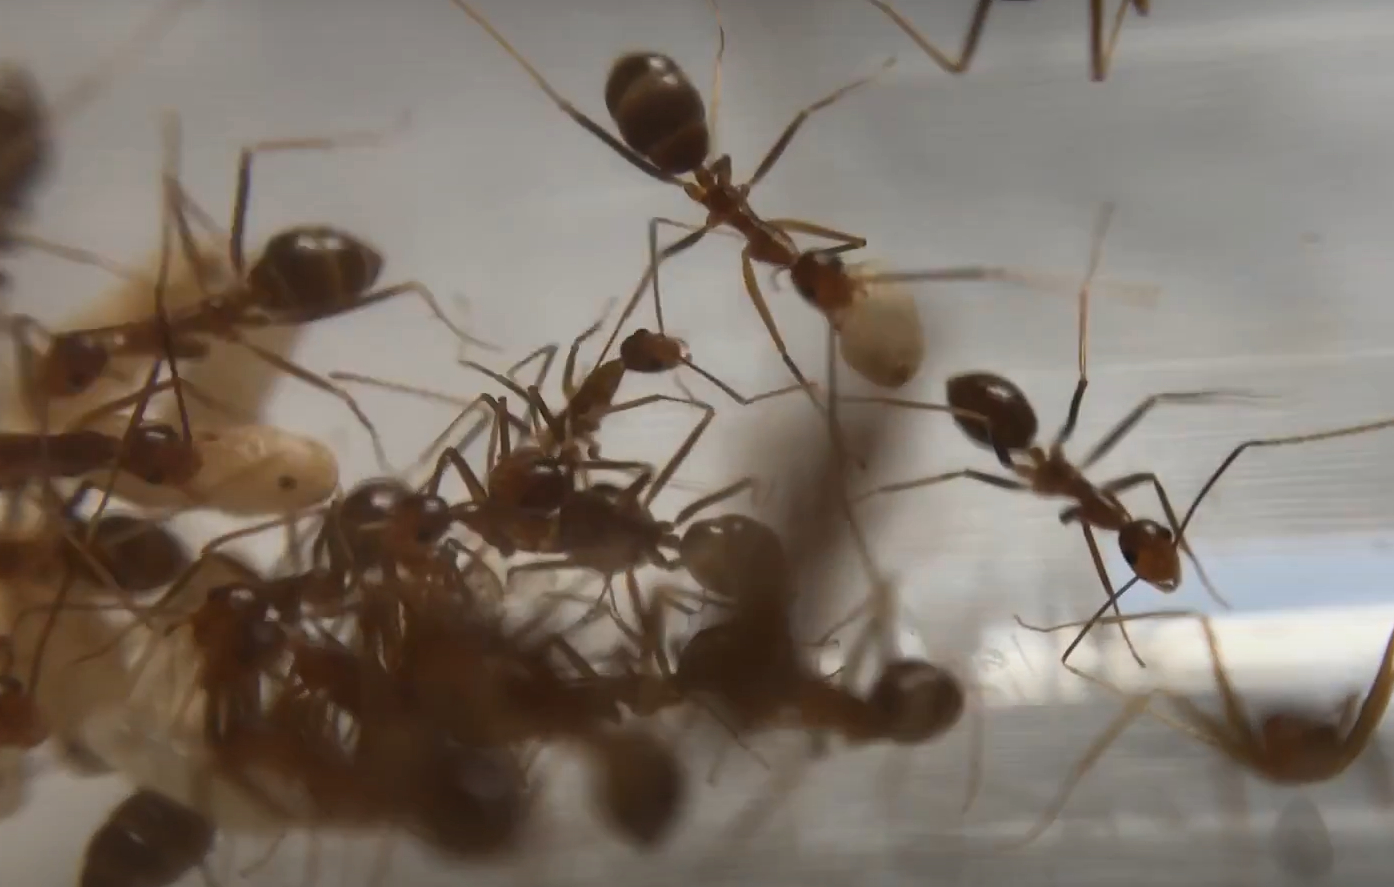 Желтые сумасшедшие муравьи биологически могут называться химерами